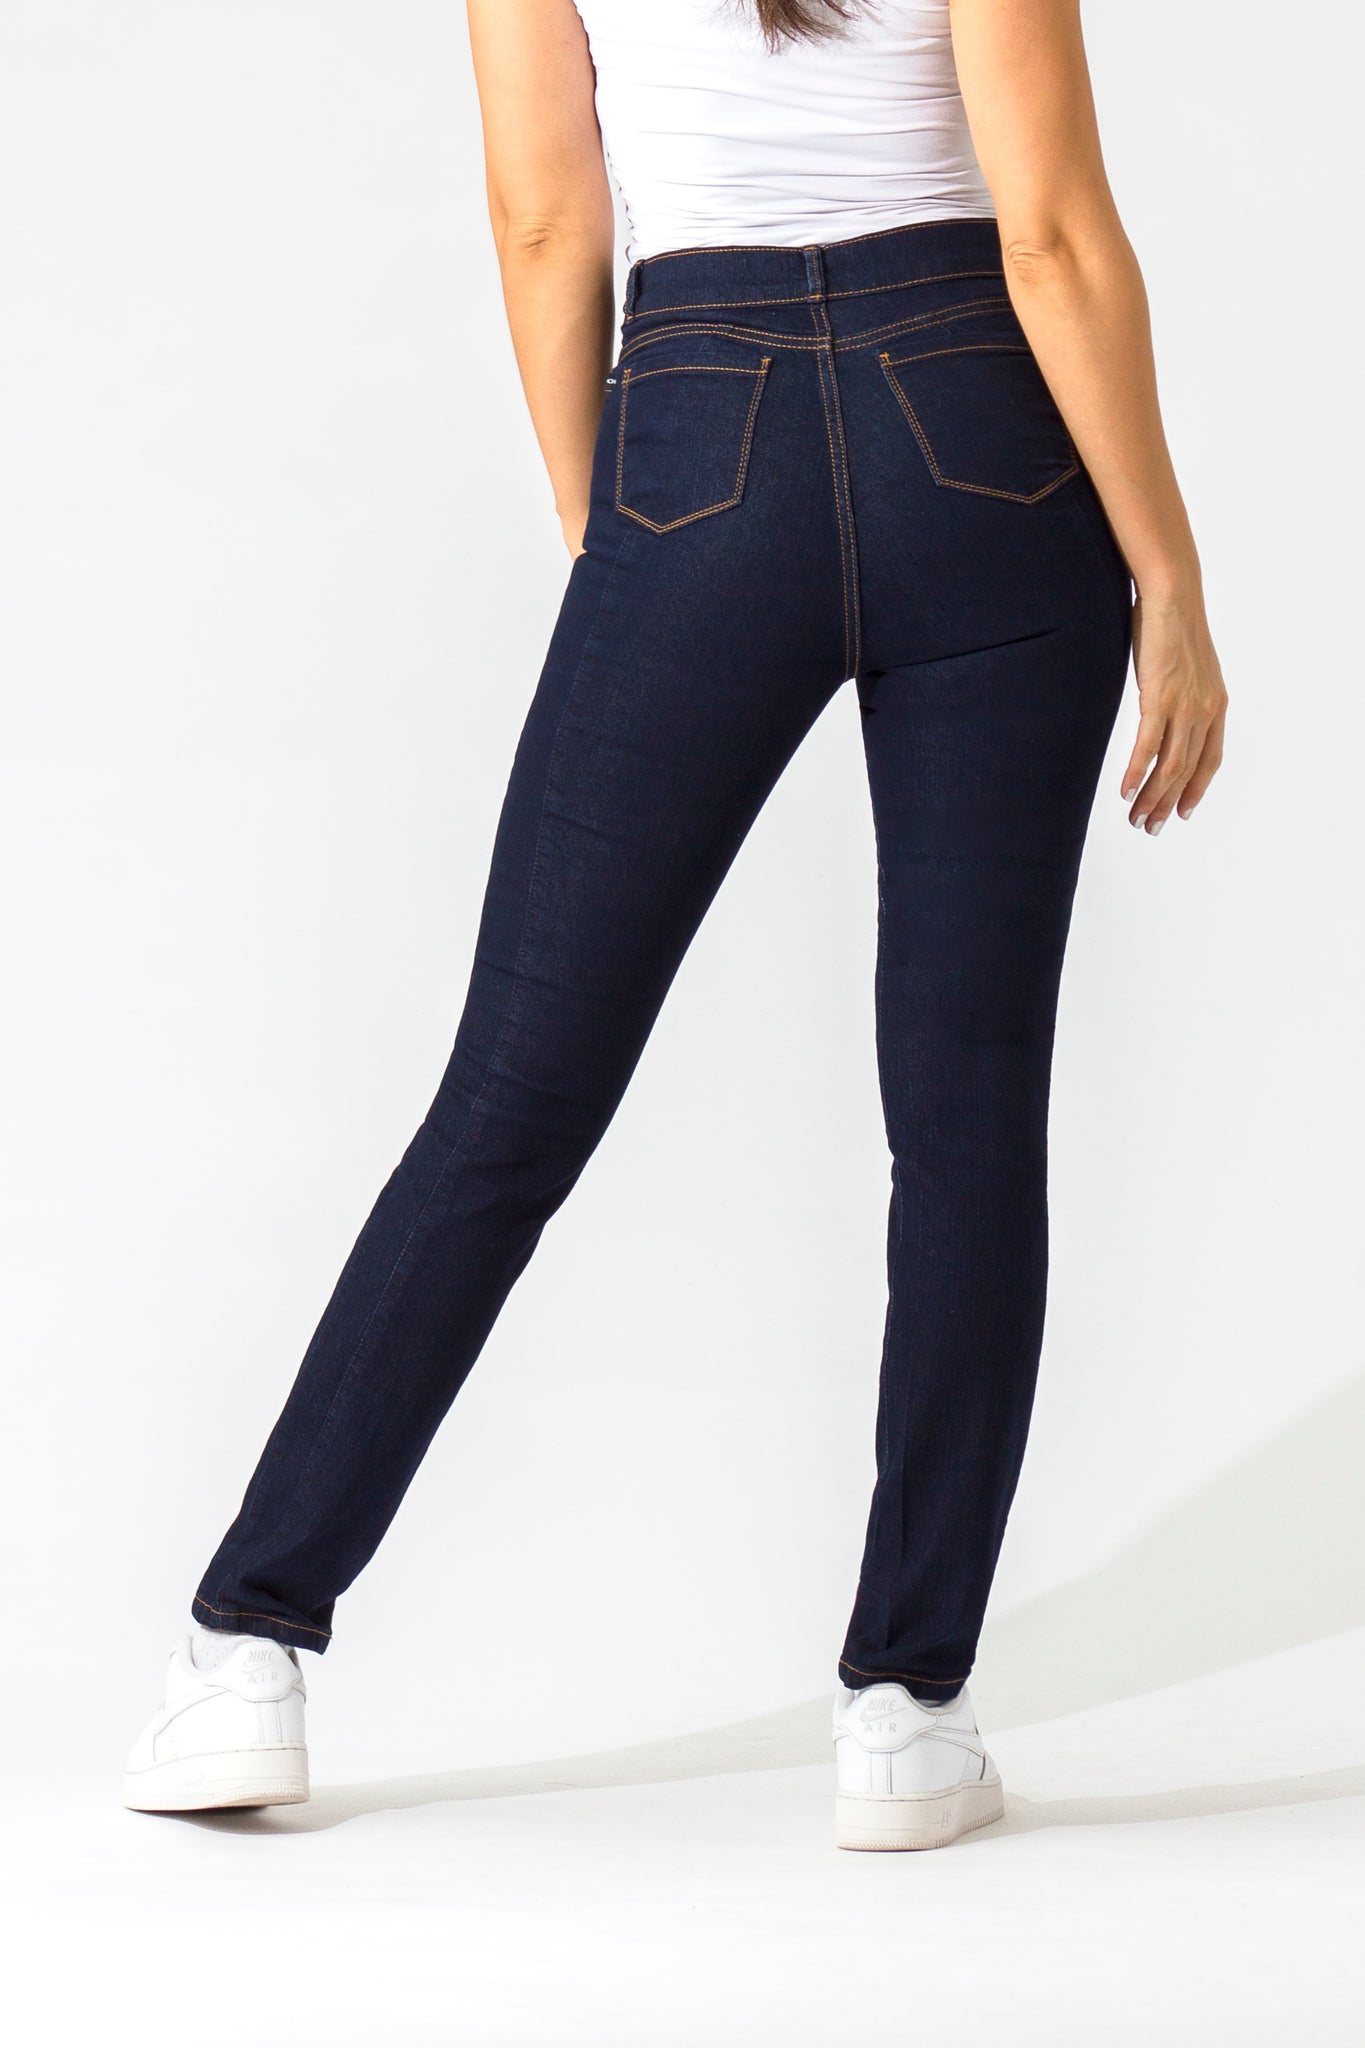 OHPOMP!® Basics, Cintura Alta Straight Jeans Azul Oscuro OP1006